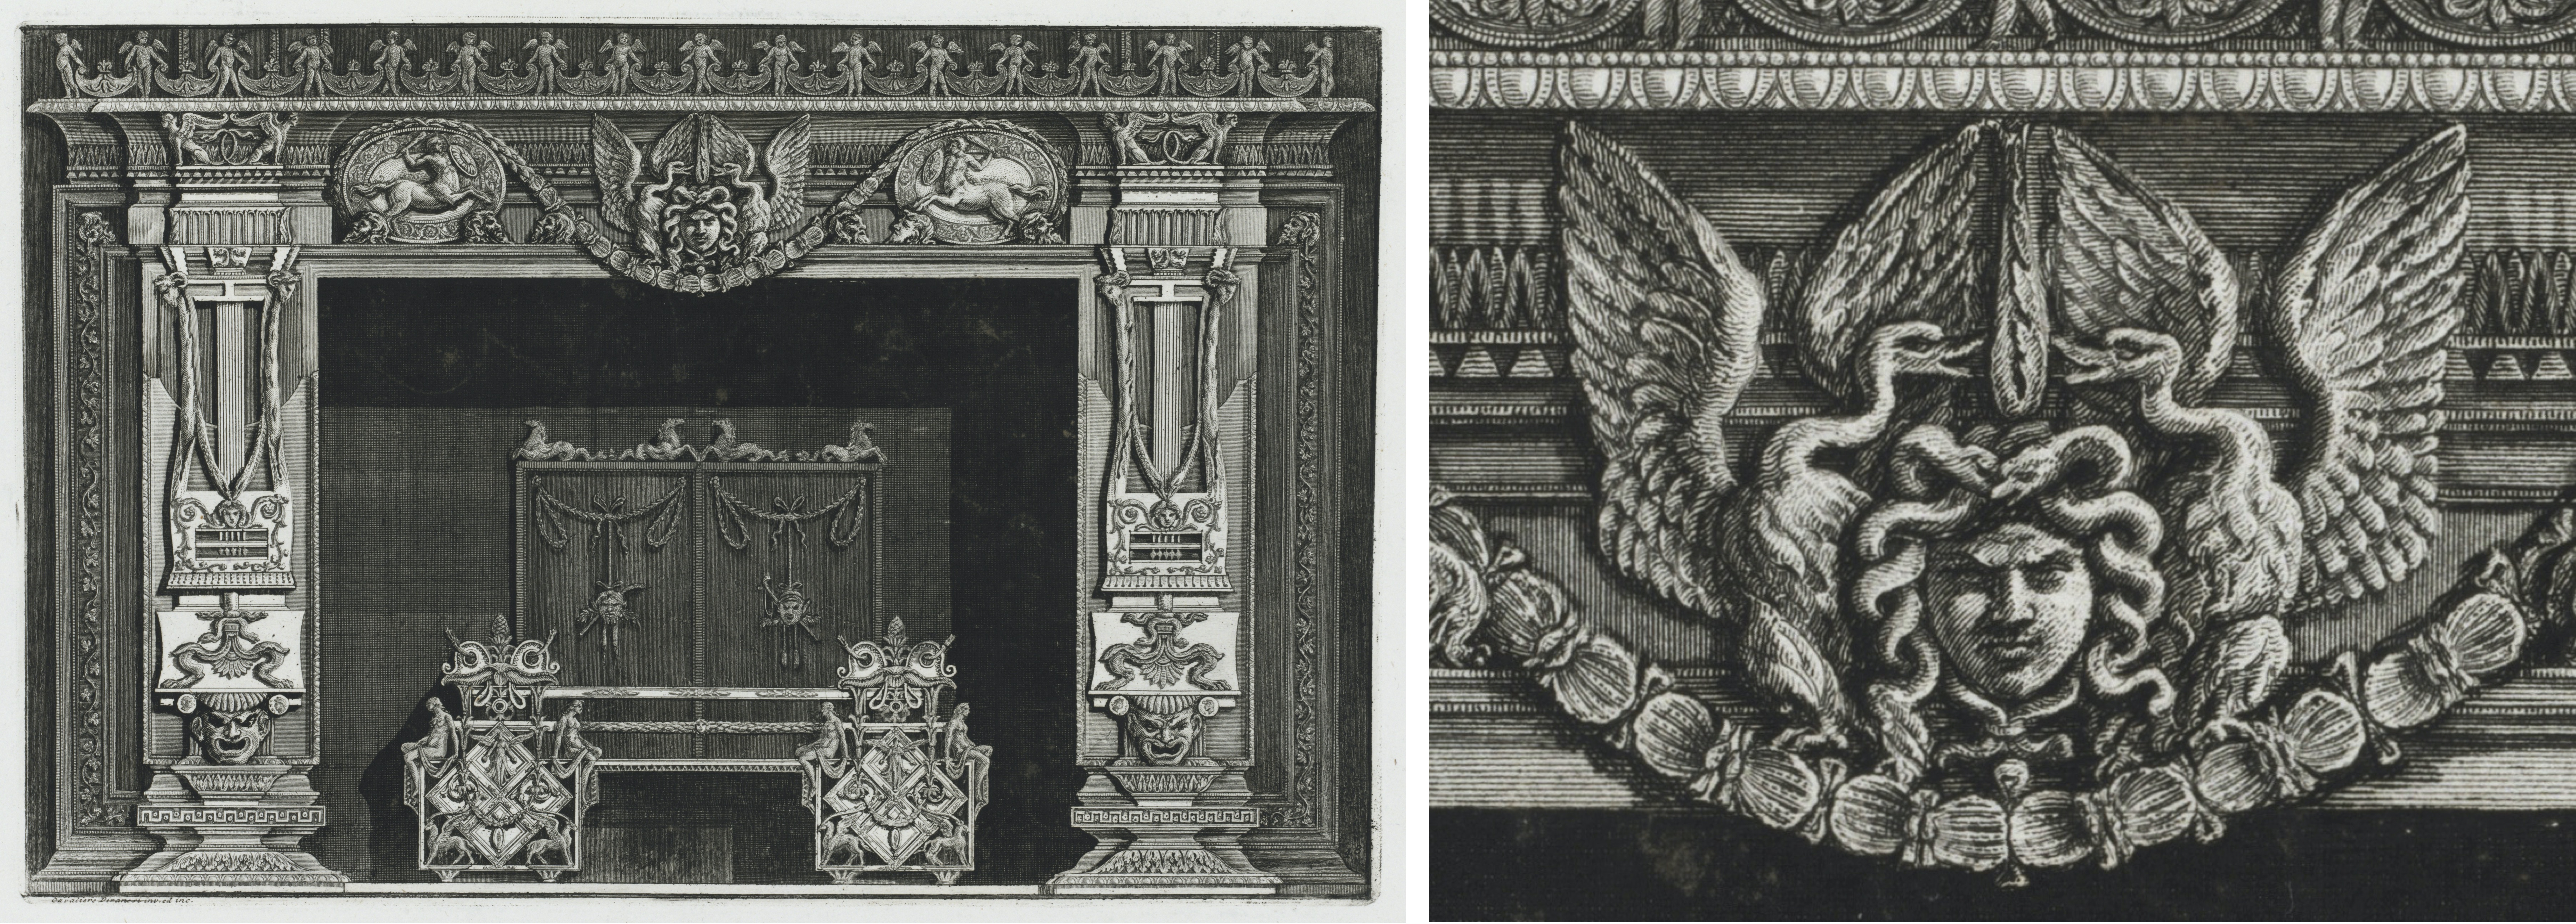 Zu sehen sind zwei Zeichnungen eines Kamins. Die linke Zeichnung zeigt den ganzen Kamin. Die rechte Zeichnung den mittleren Ornamentschmuck. 